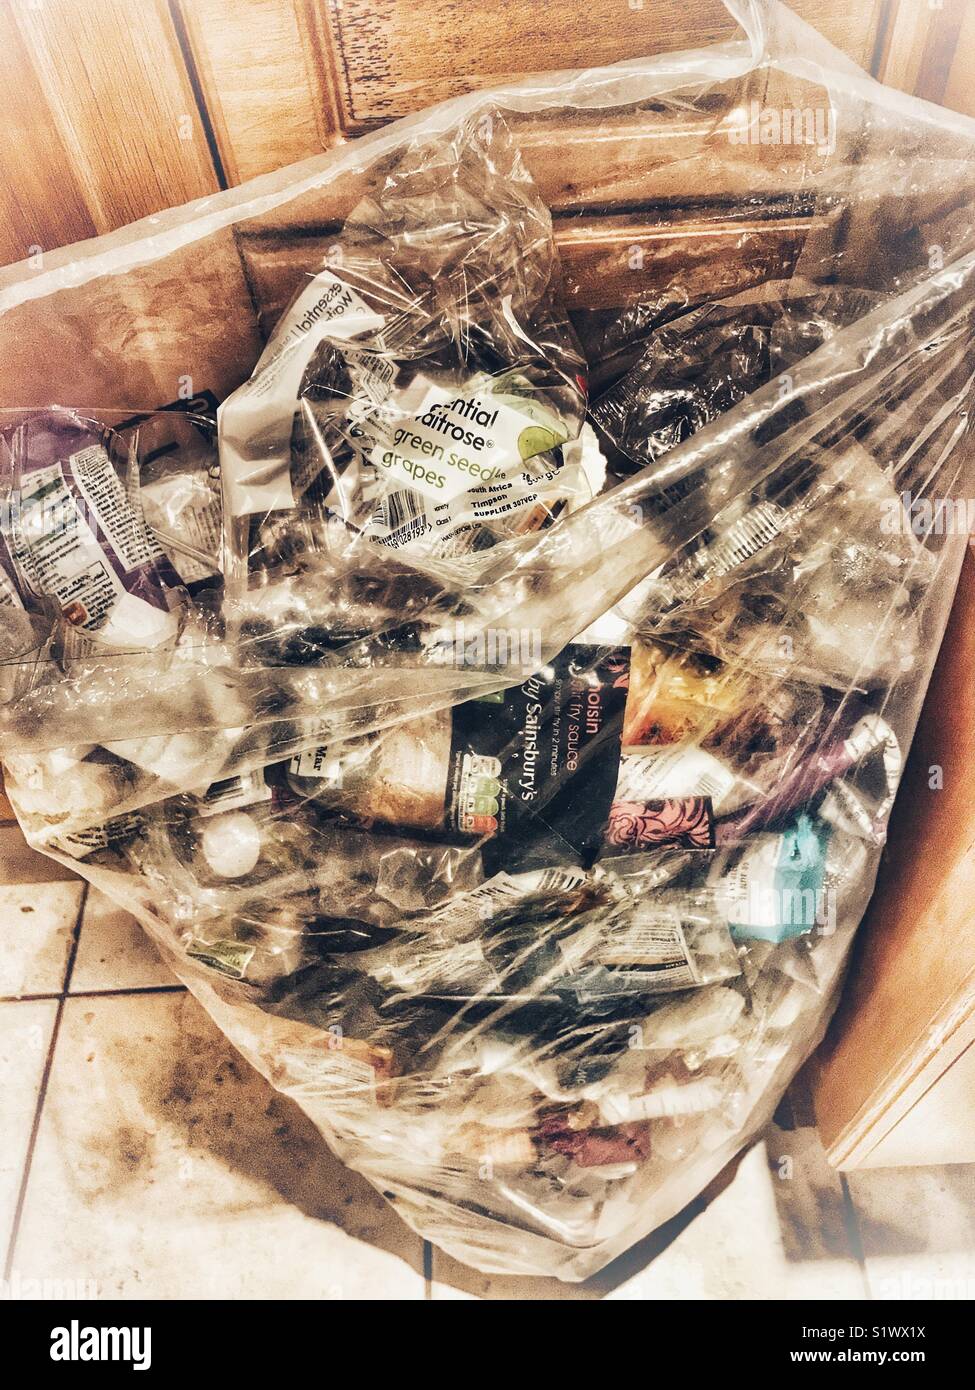 Les questions d'environnement. Les ordures ménagères non recyclables, y compris les emballages alimentaires en plastique à base de fruits et légumes achetés dans les supermarchés. Banque D'Images